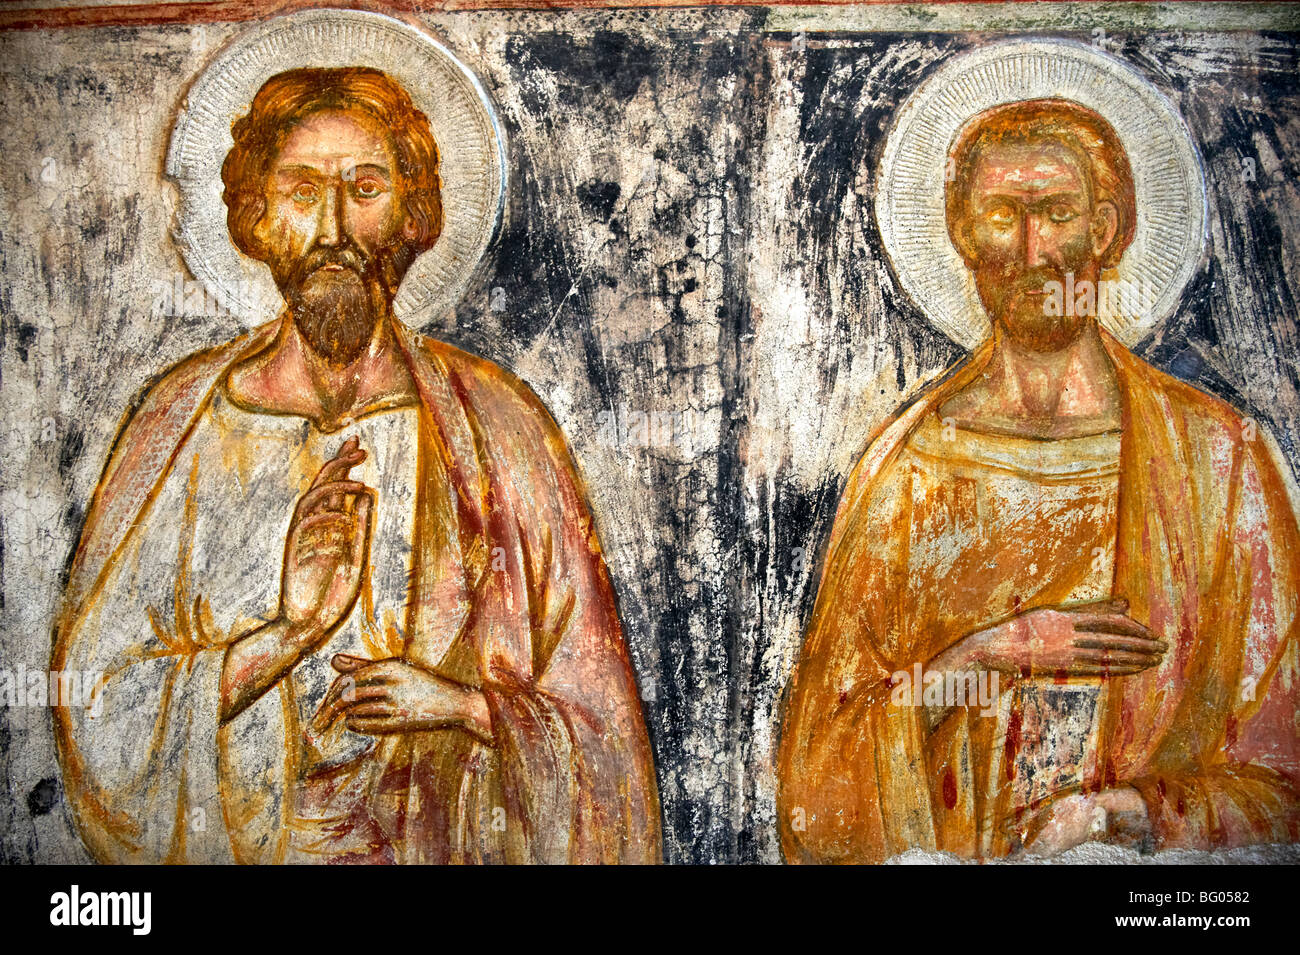 Fresque médiévale tardive 13-14 e siècle, musée de la cathédrale chapelle, Amalfi, Italie Banque D'Images